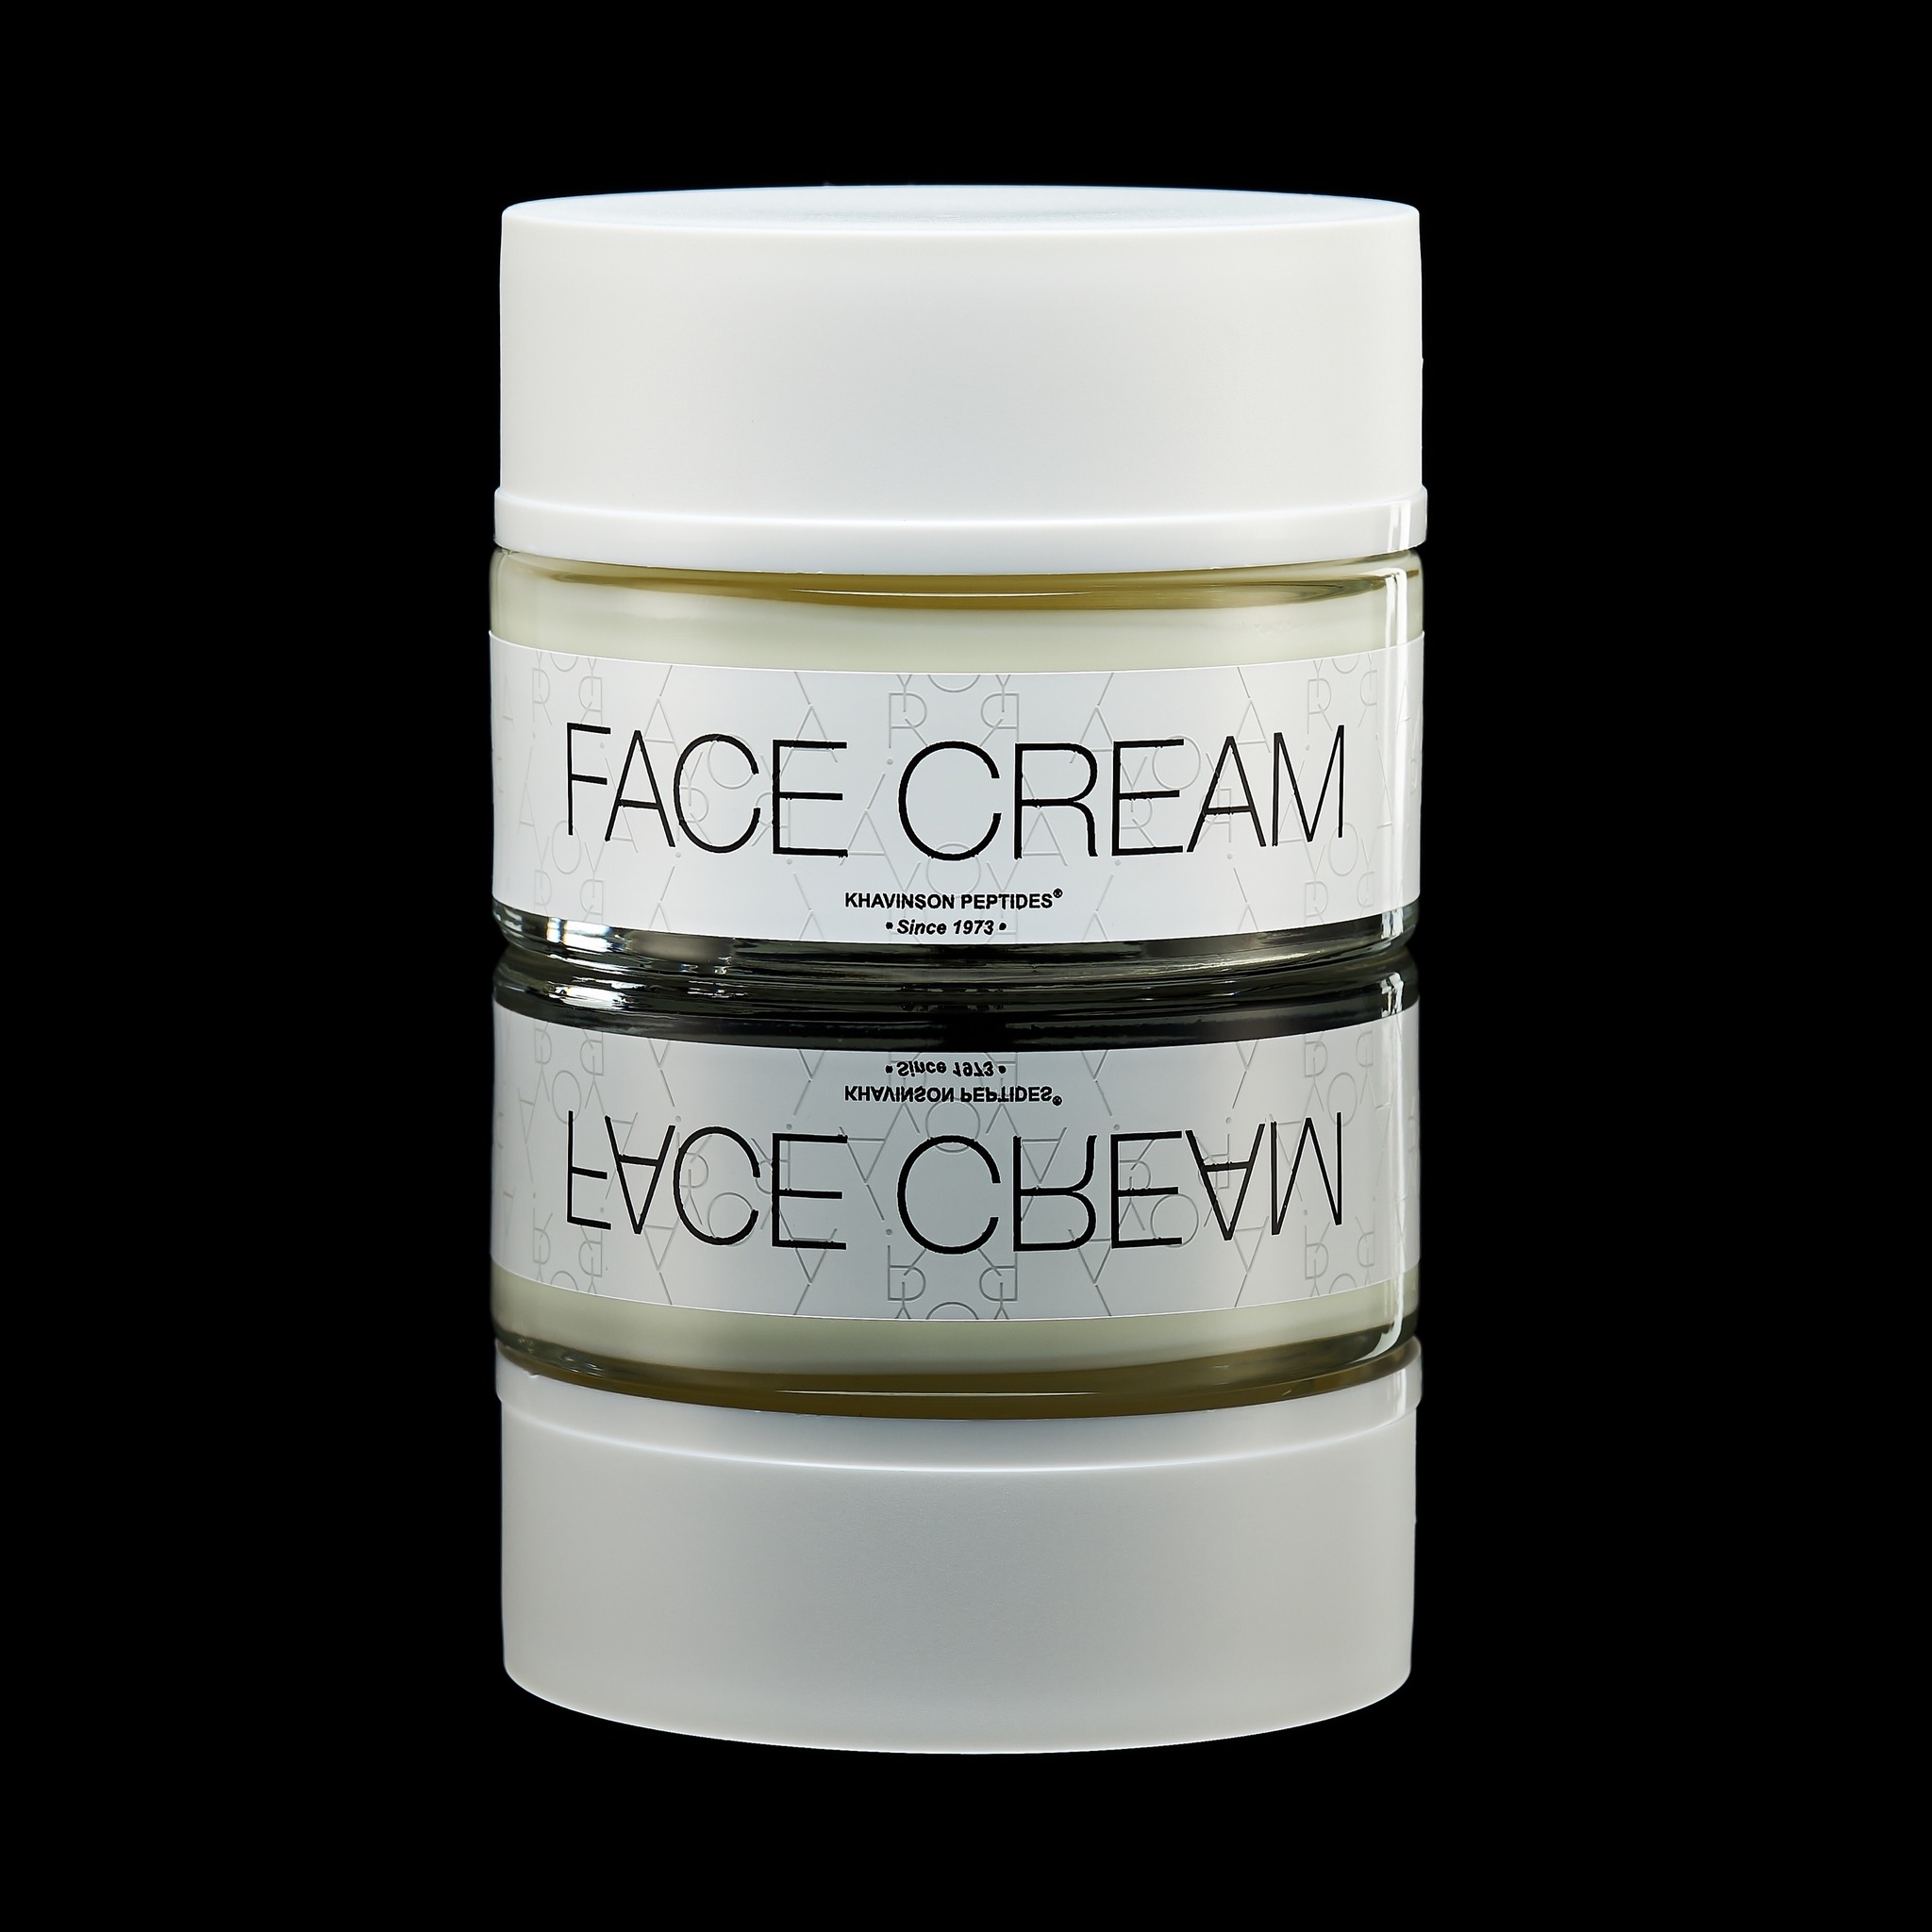 AYORI, Увлажняющий крем для лица Face Cream, 50 мл